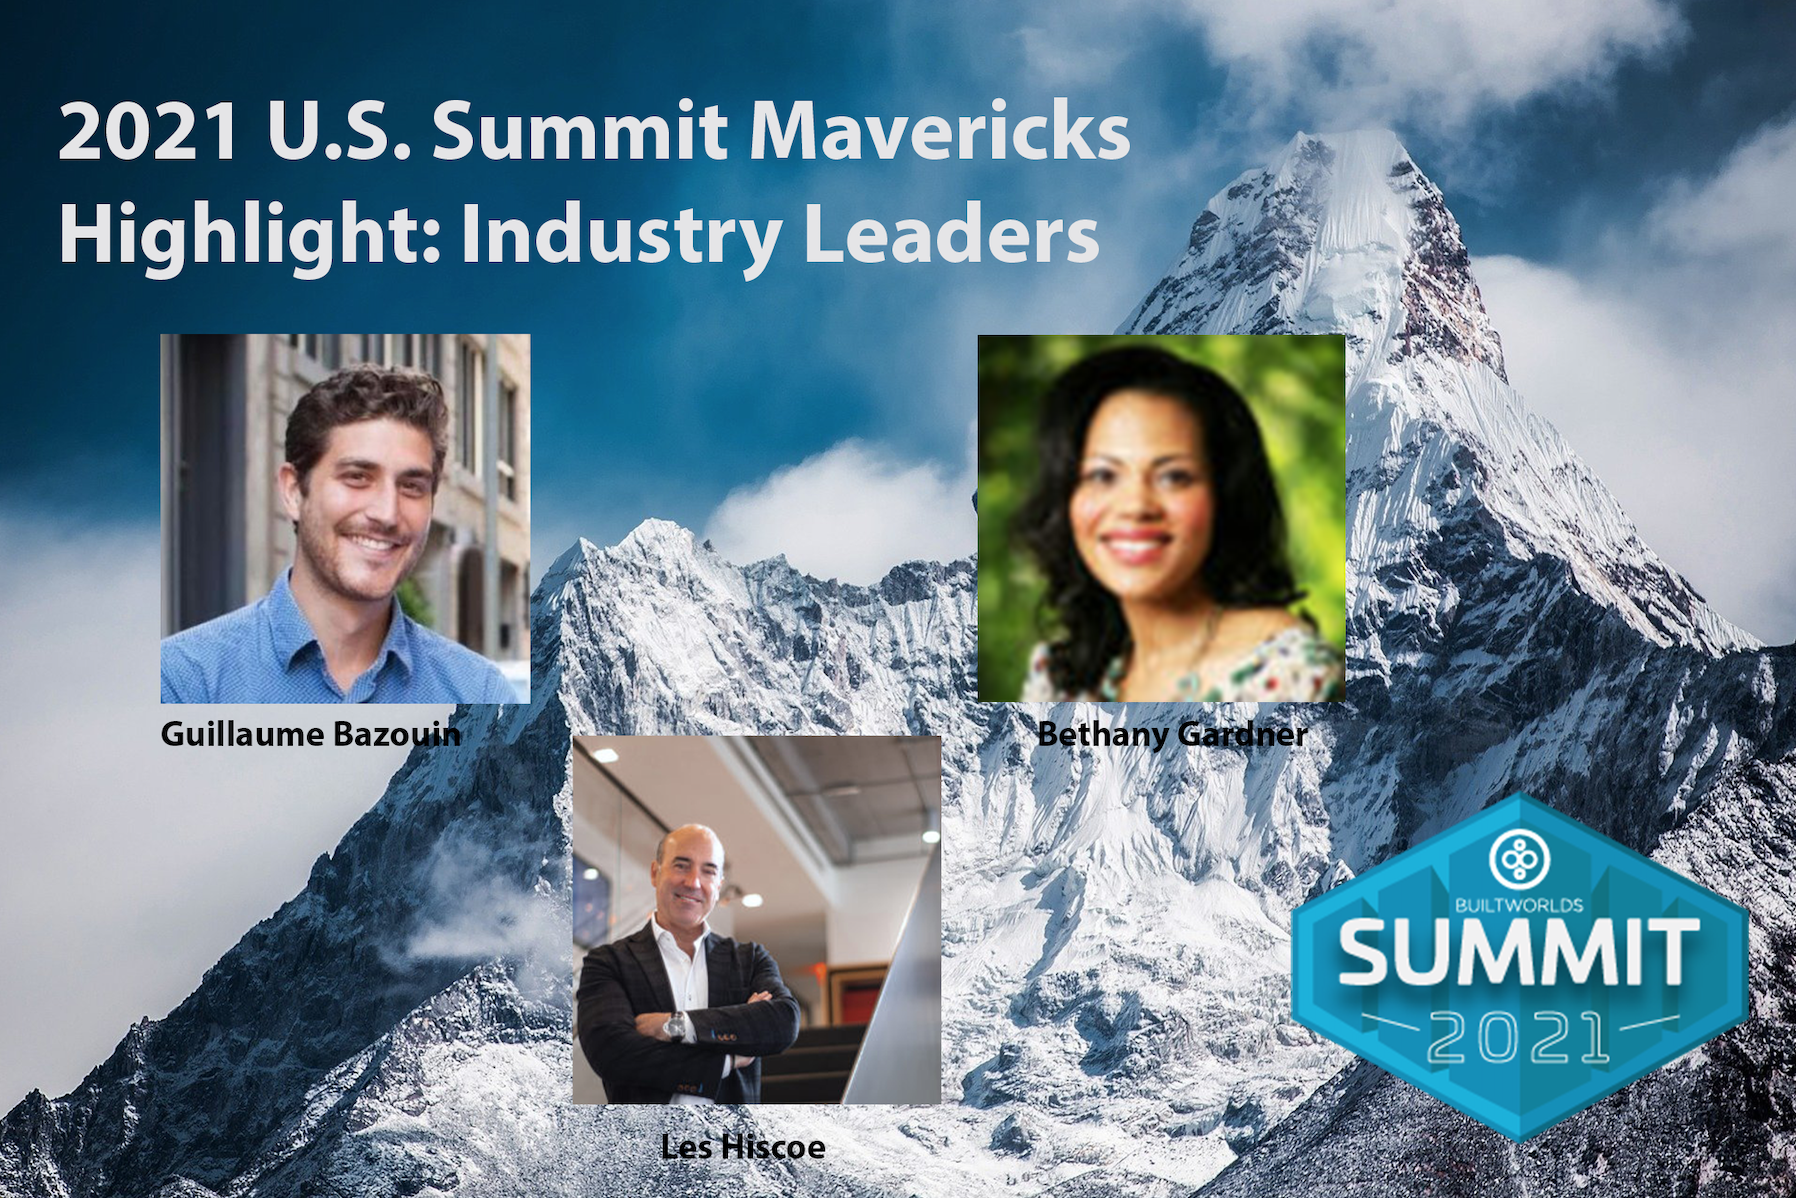 2021 U.S. Summit Mavericks Highlight Industry Leaders